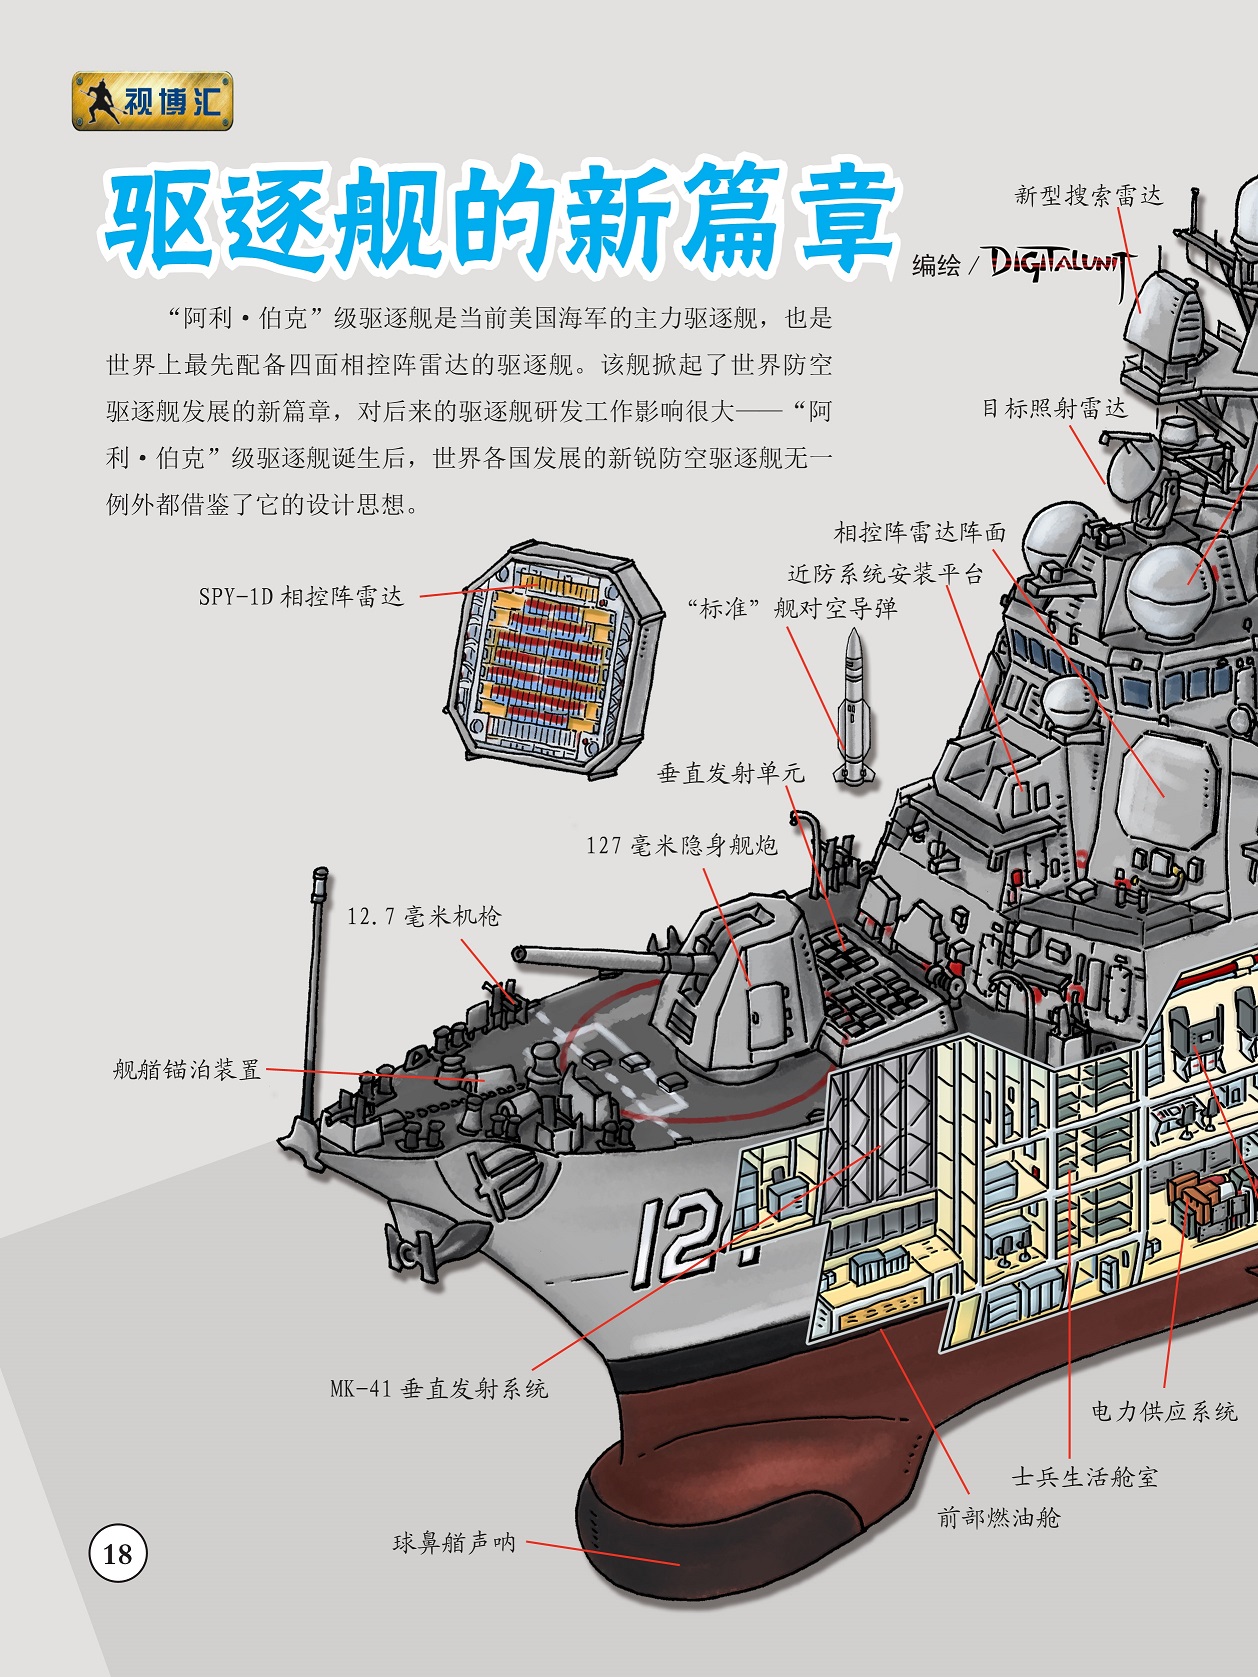 美国海军的主力驱逐舰,世界各国发展的新锐防空驱逐舰